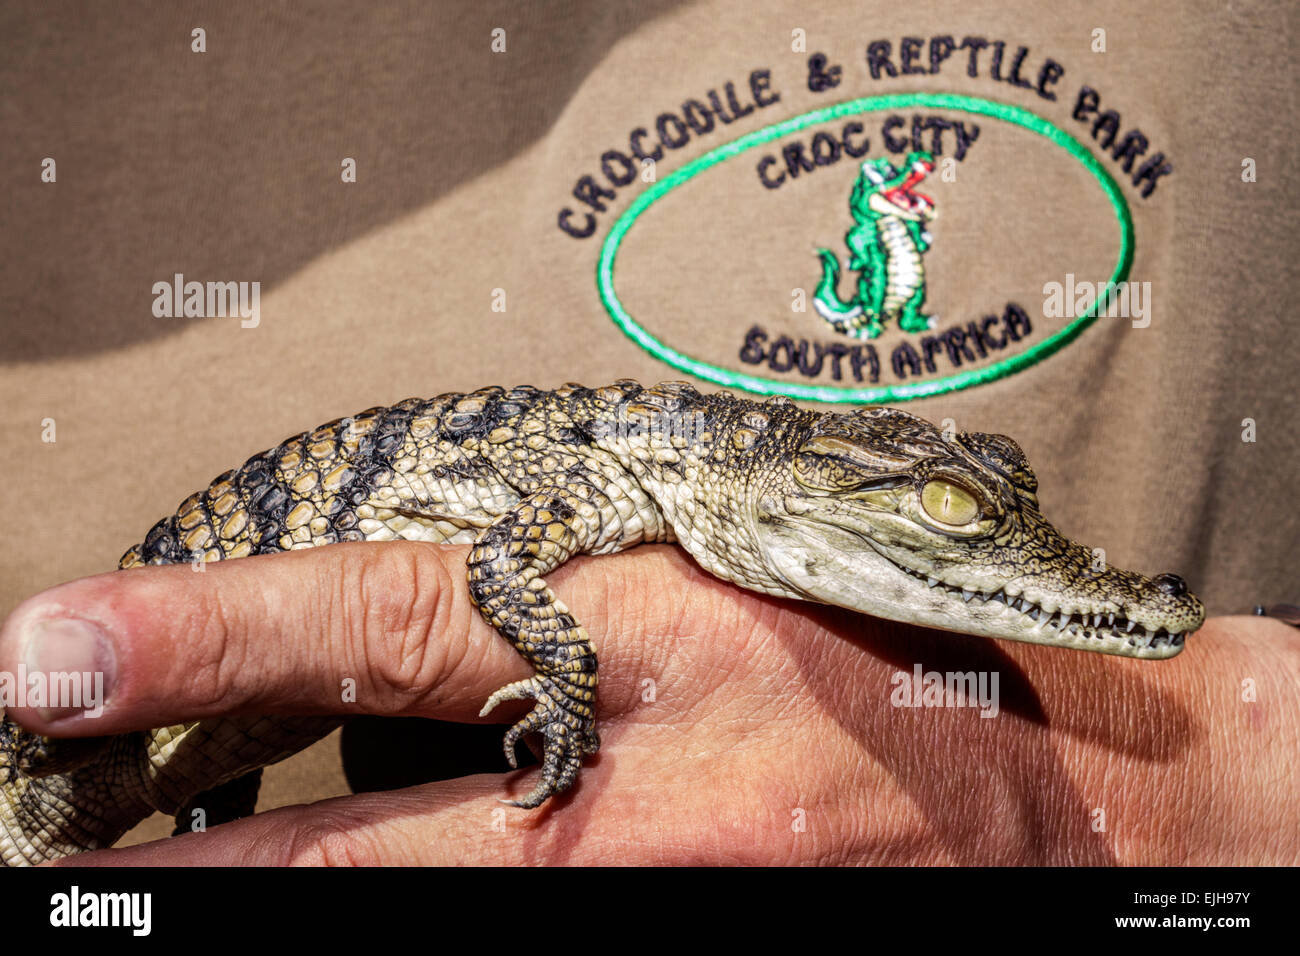 Johannesburg Sud Africa, Croc City Crocodile & Reptile Park, fattoria, bambini piccoli bambini, SAfri150305037 Foto Stock